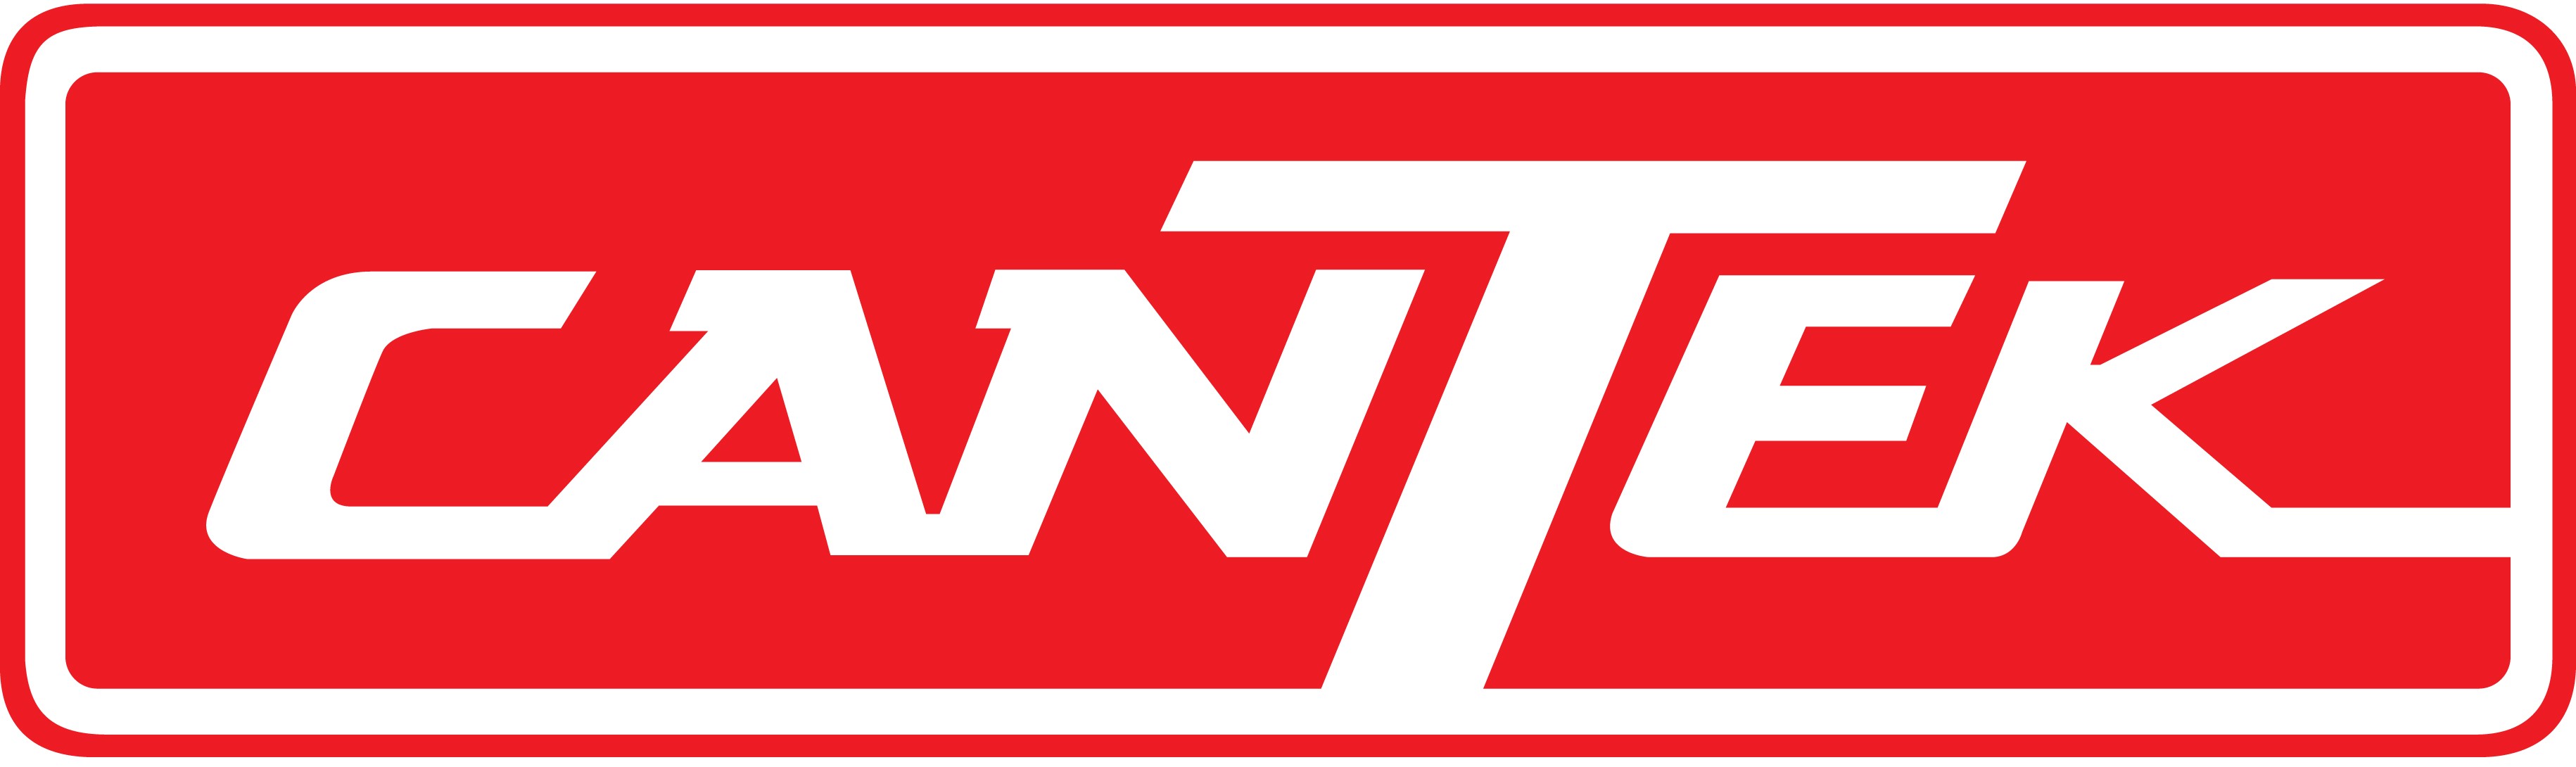 Cantek logo